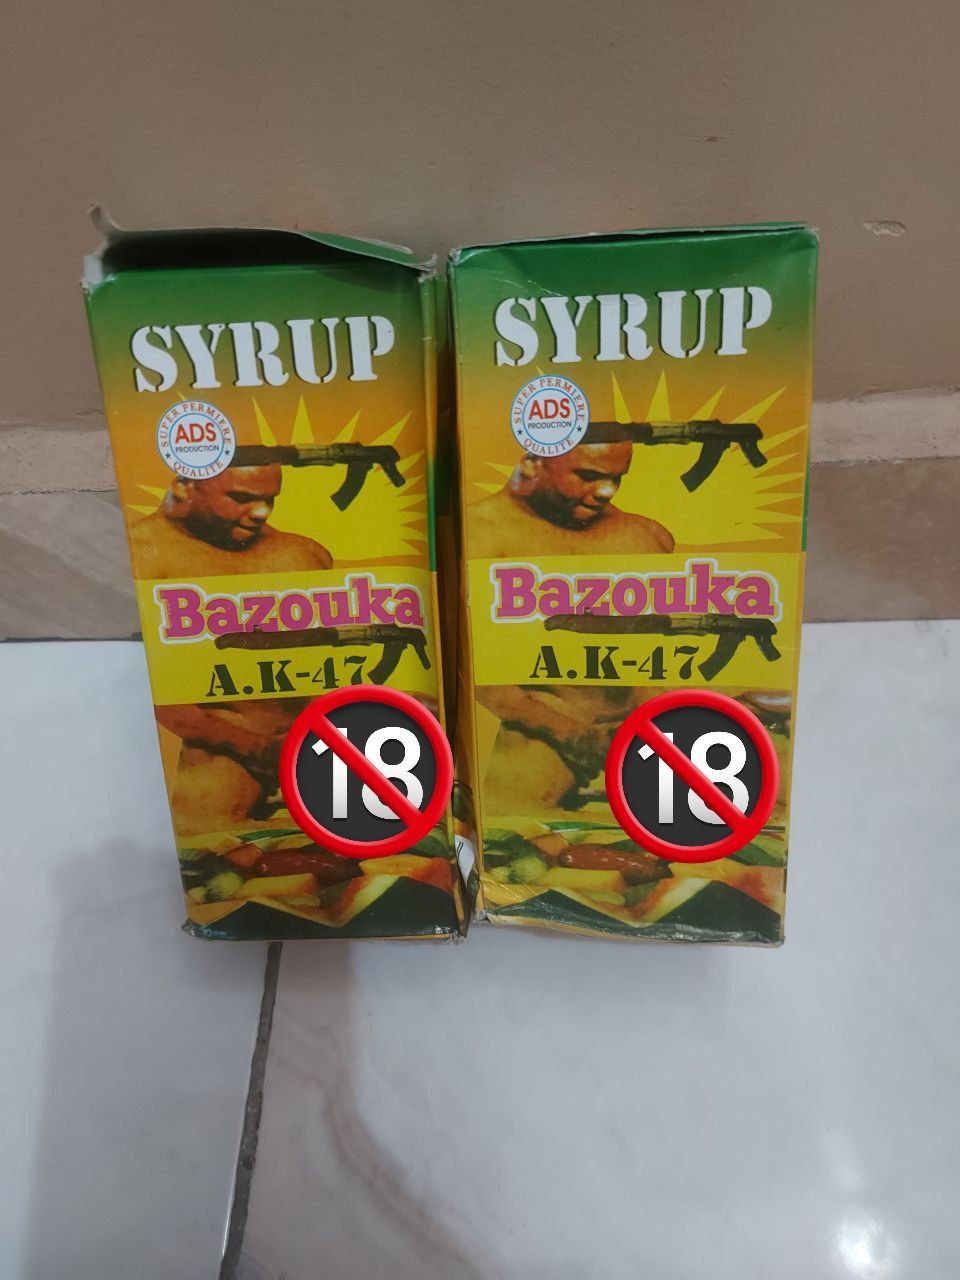 Bazouka AK-47 Syrup, Health and Wellness